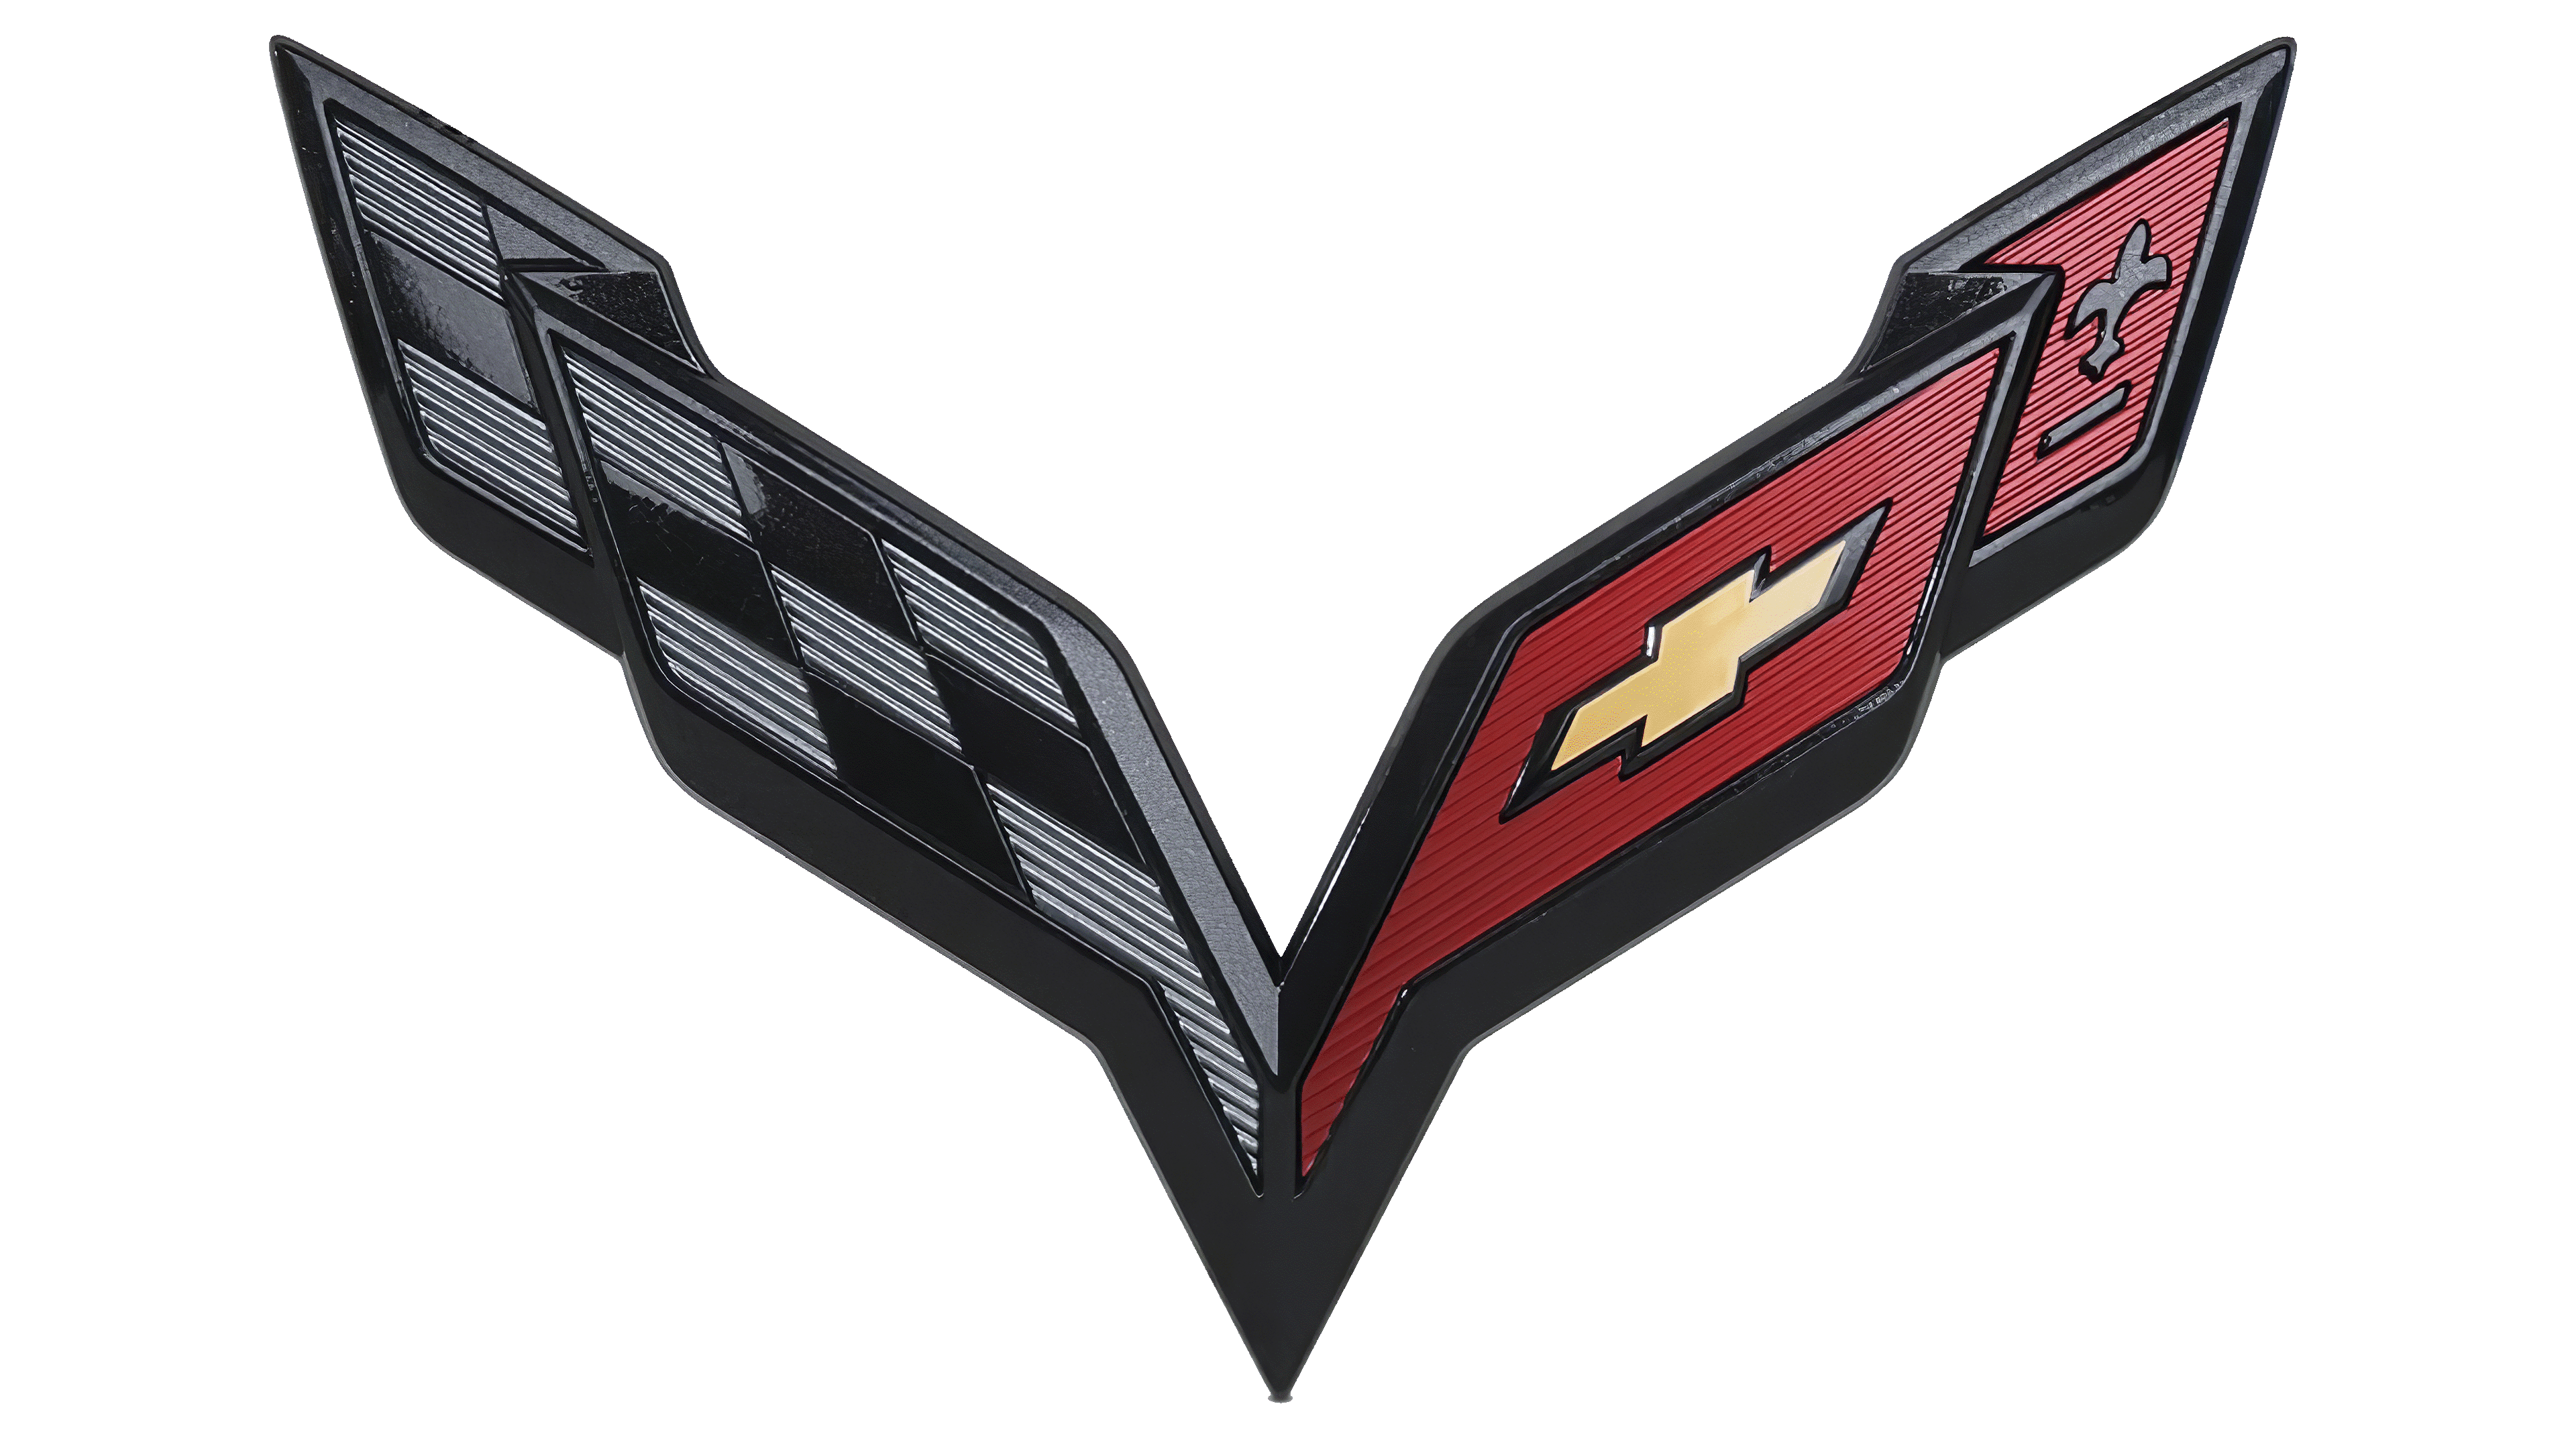 Le logo Corvette : présentation et signification.